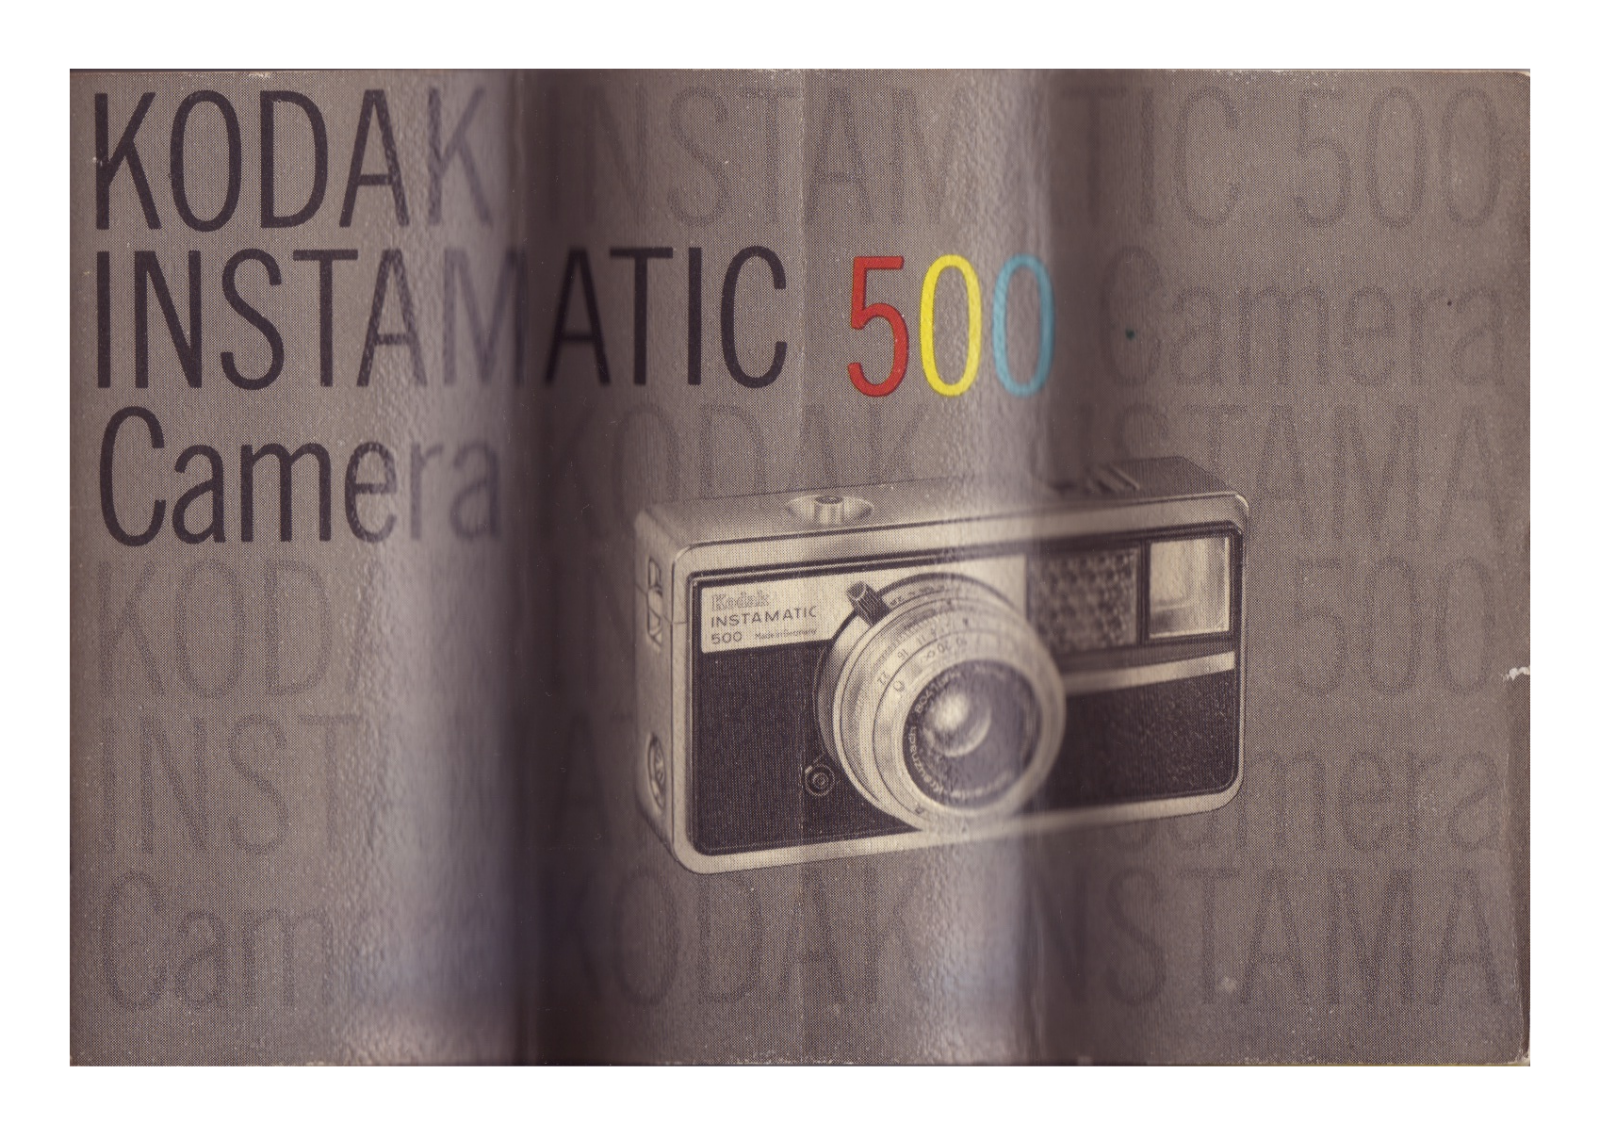 Kodak INSTAMATIC 500 User Manual